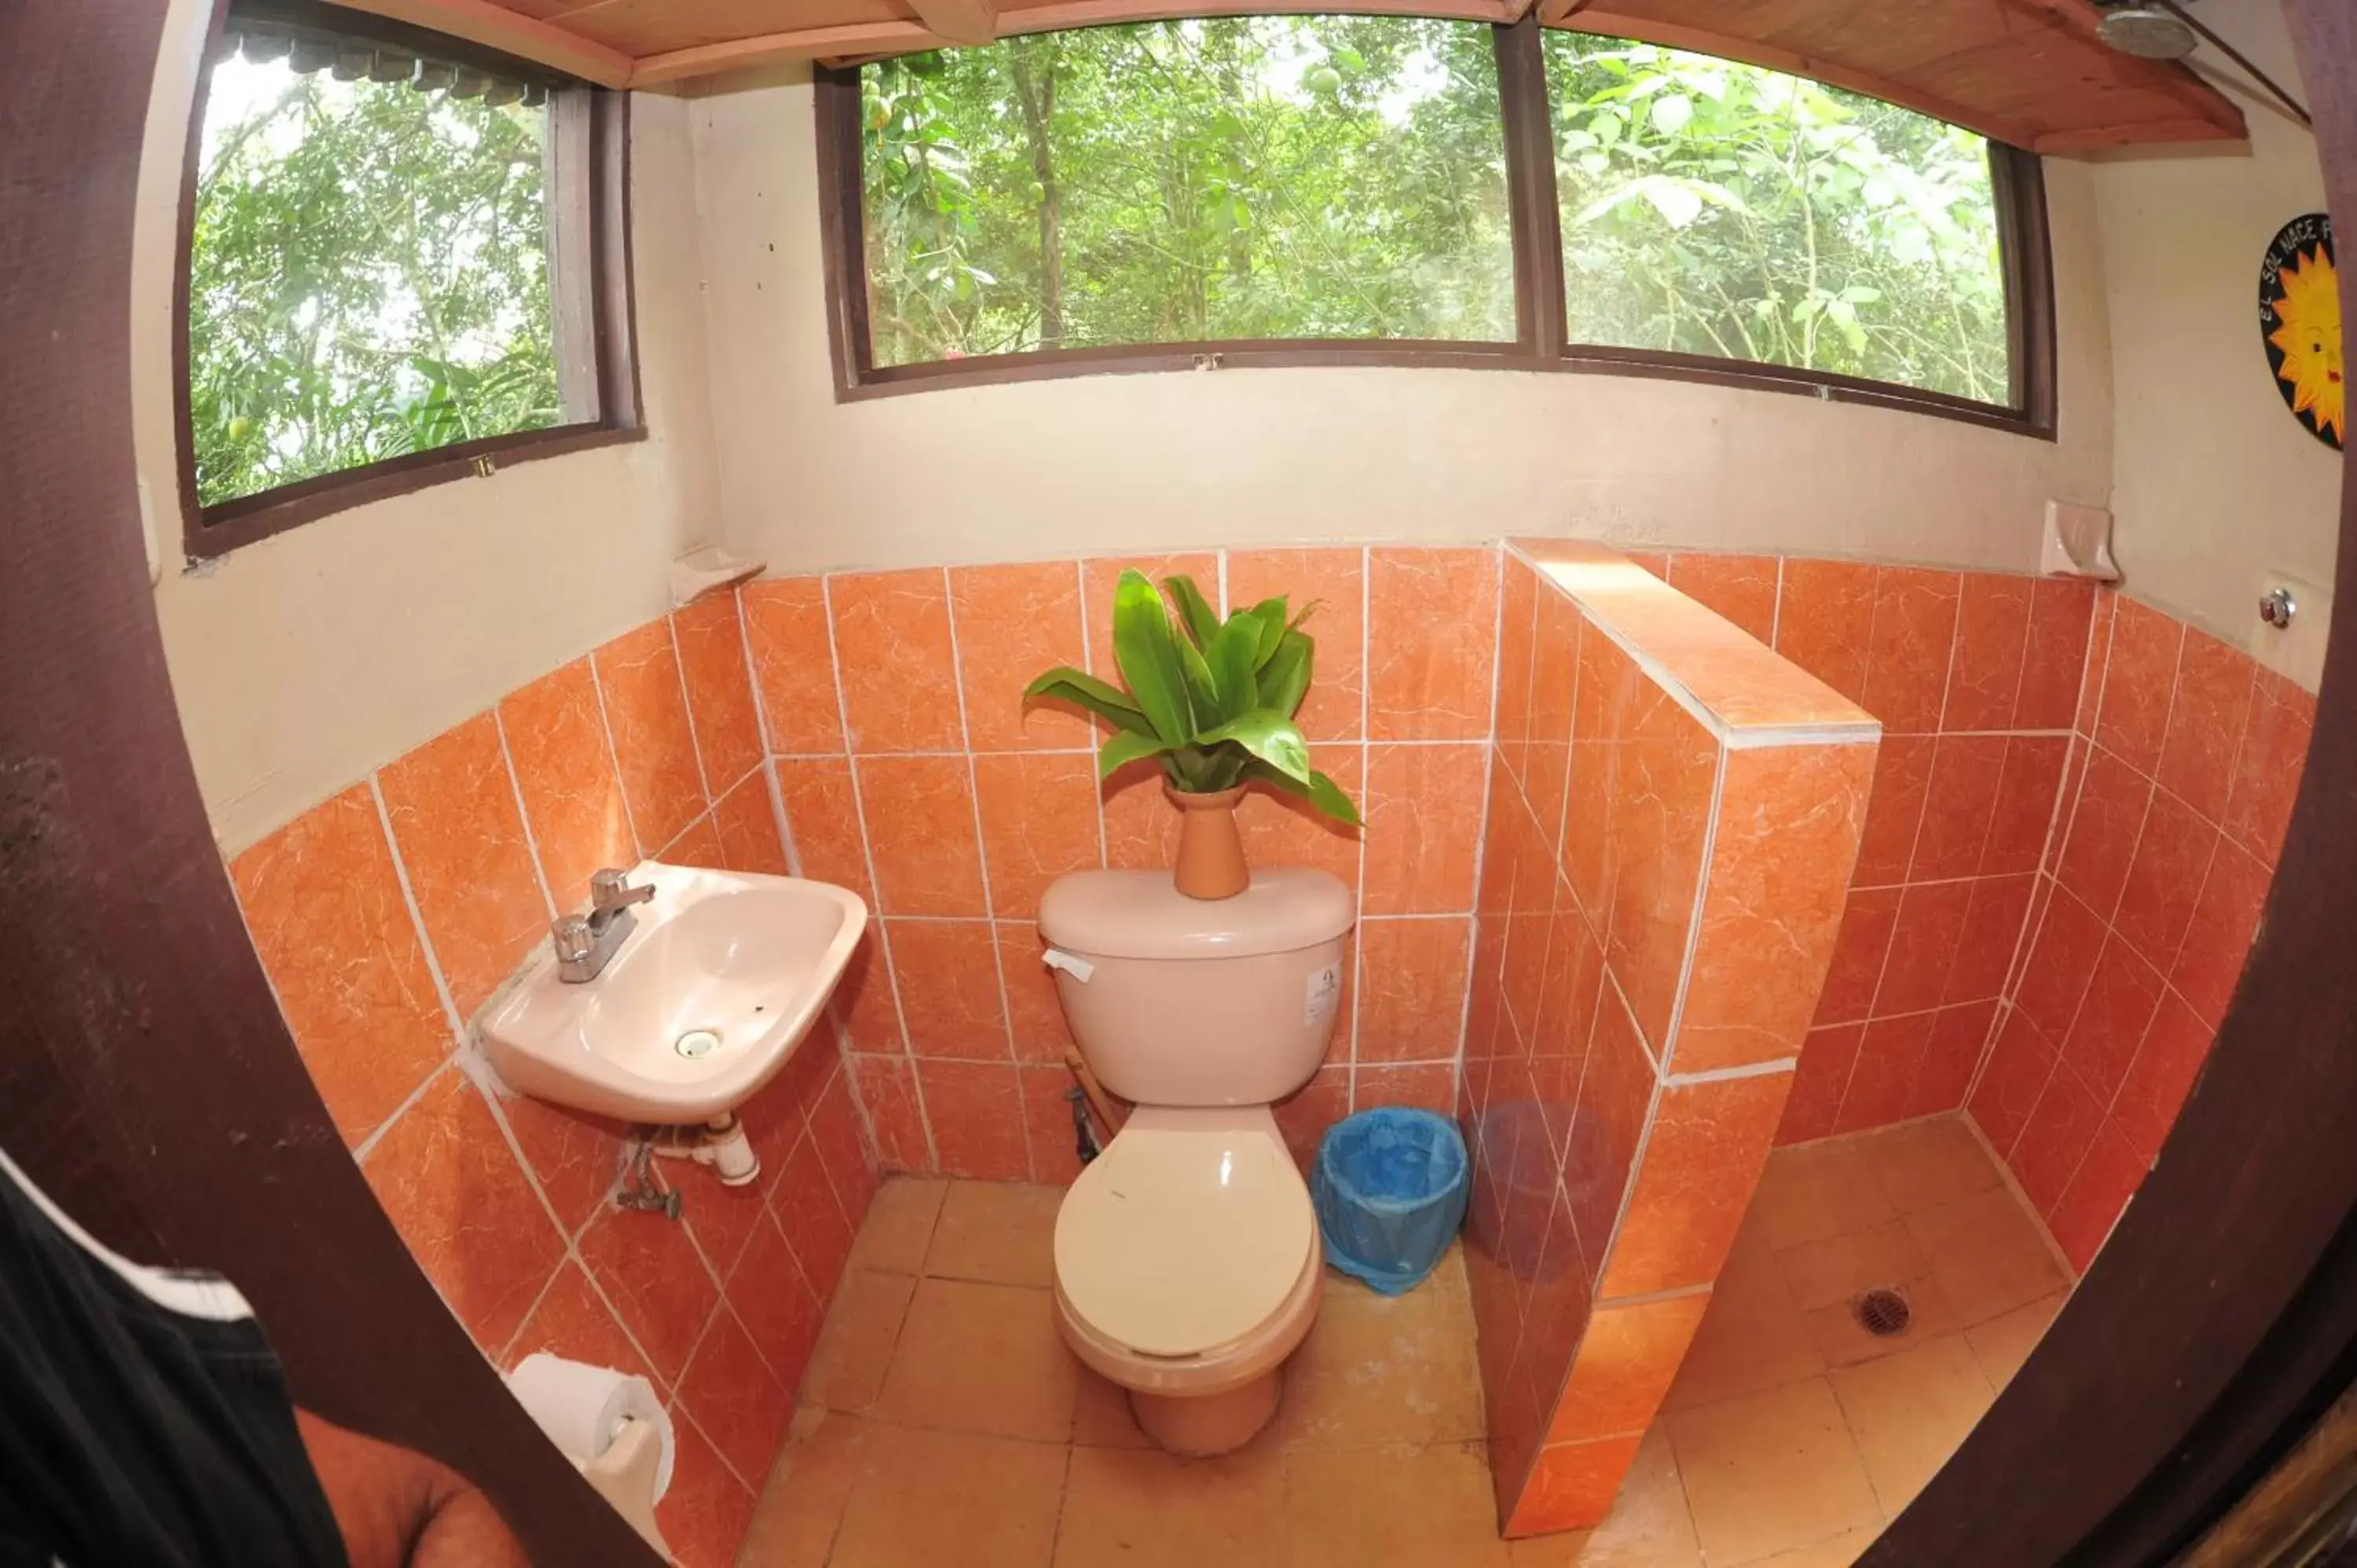 Bathroom in Ecobiosfera